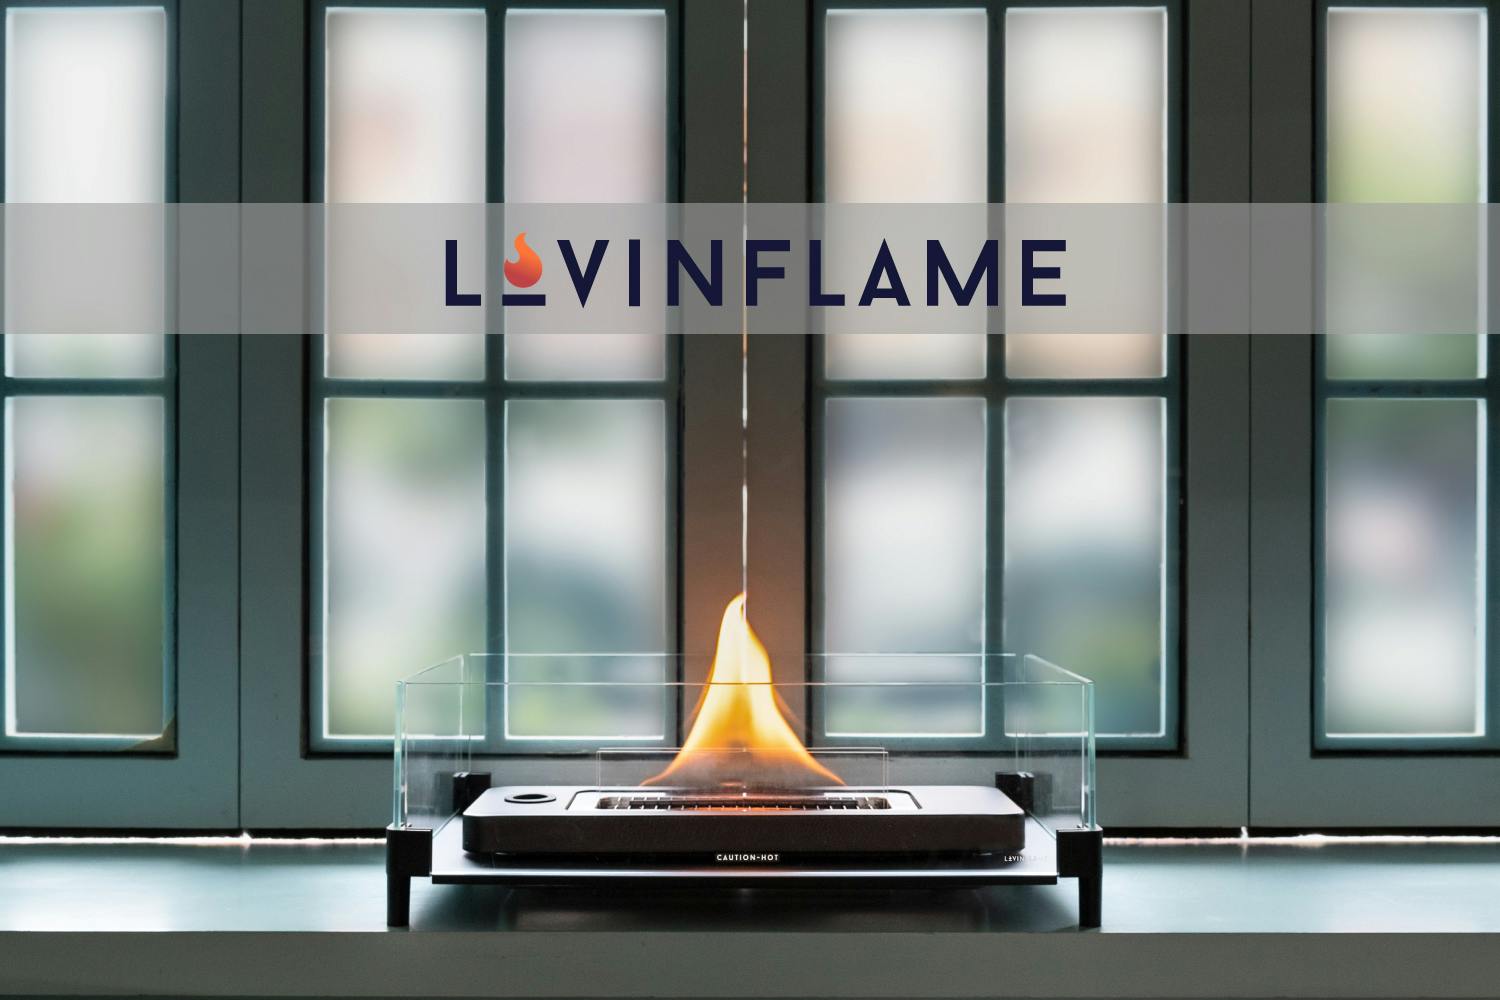 もえない燃料で炎を楽しむ?! お家で楽しめるポータブル暖炉：Lovinflame - CAMPFIRE (キャンプファイヤー)